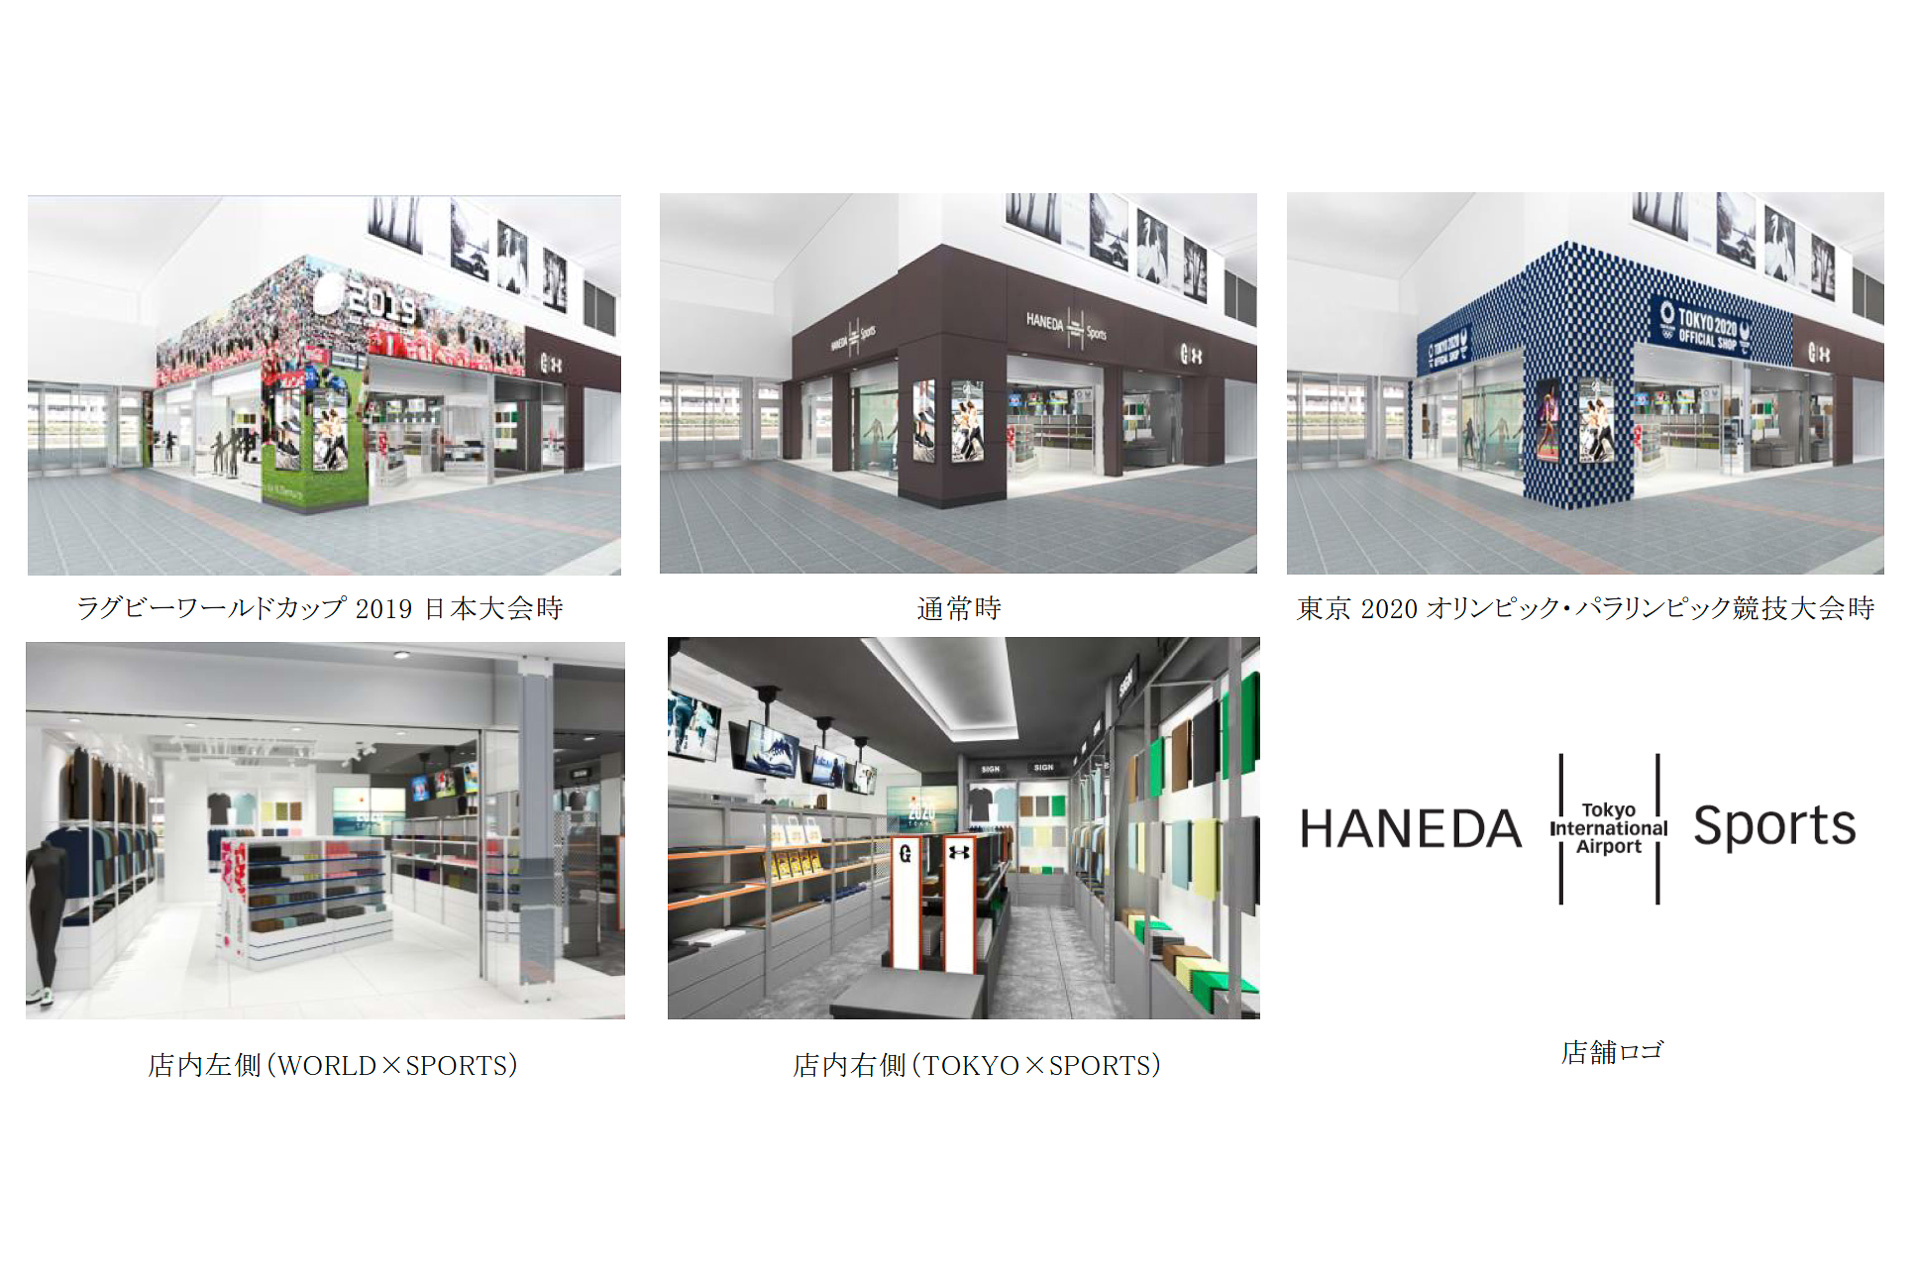 羽田空港 スポーツウェアや読売ジャイアンツグッズを販売する Haneda Sports を4月24日オープン コンセプトは World Tokyo Sports トラベル Watch